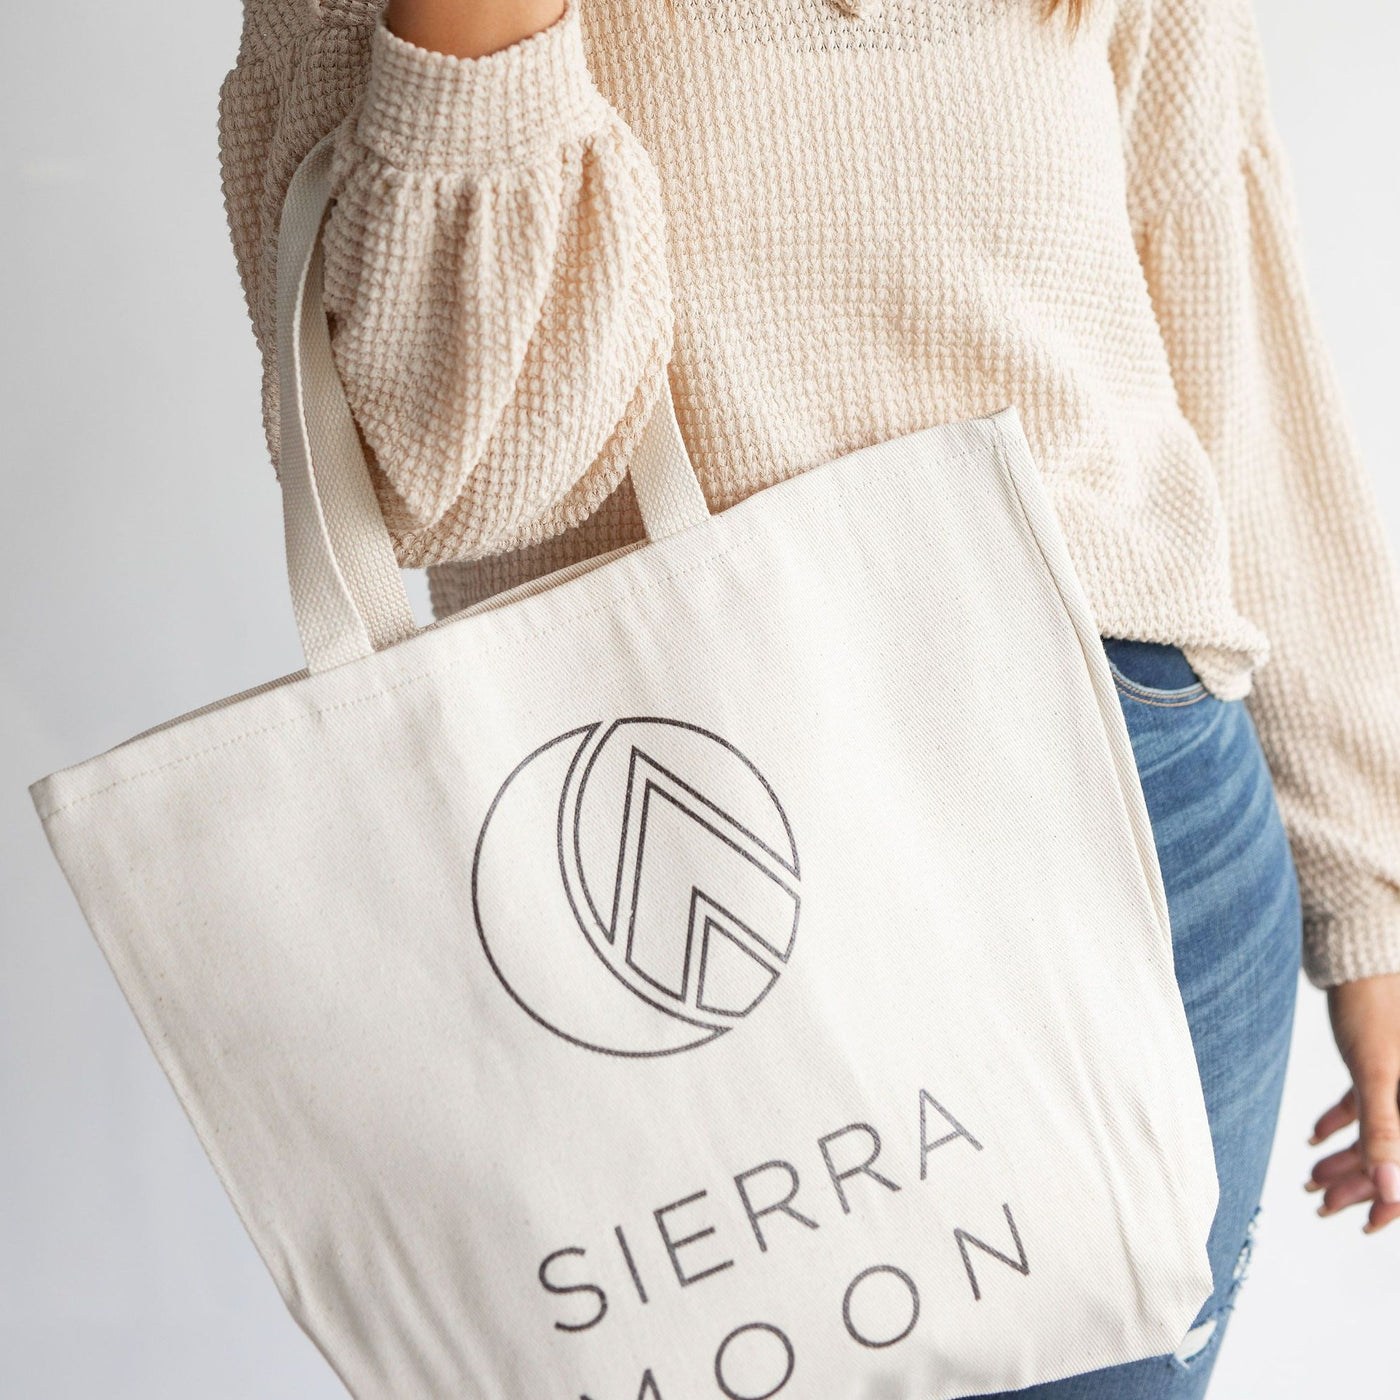 Buy 1, Get 1 Free - Sierra Moon Logo Tote